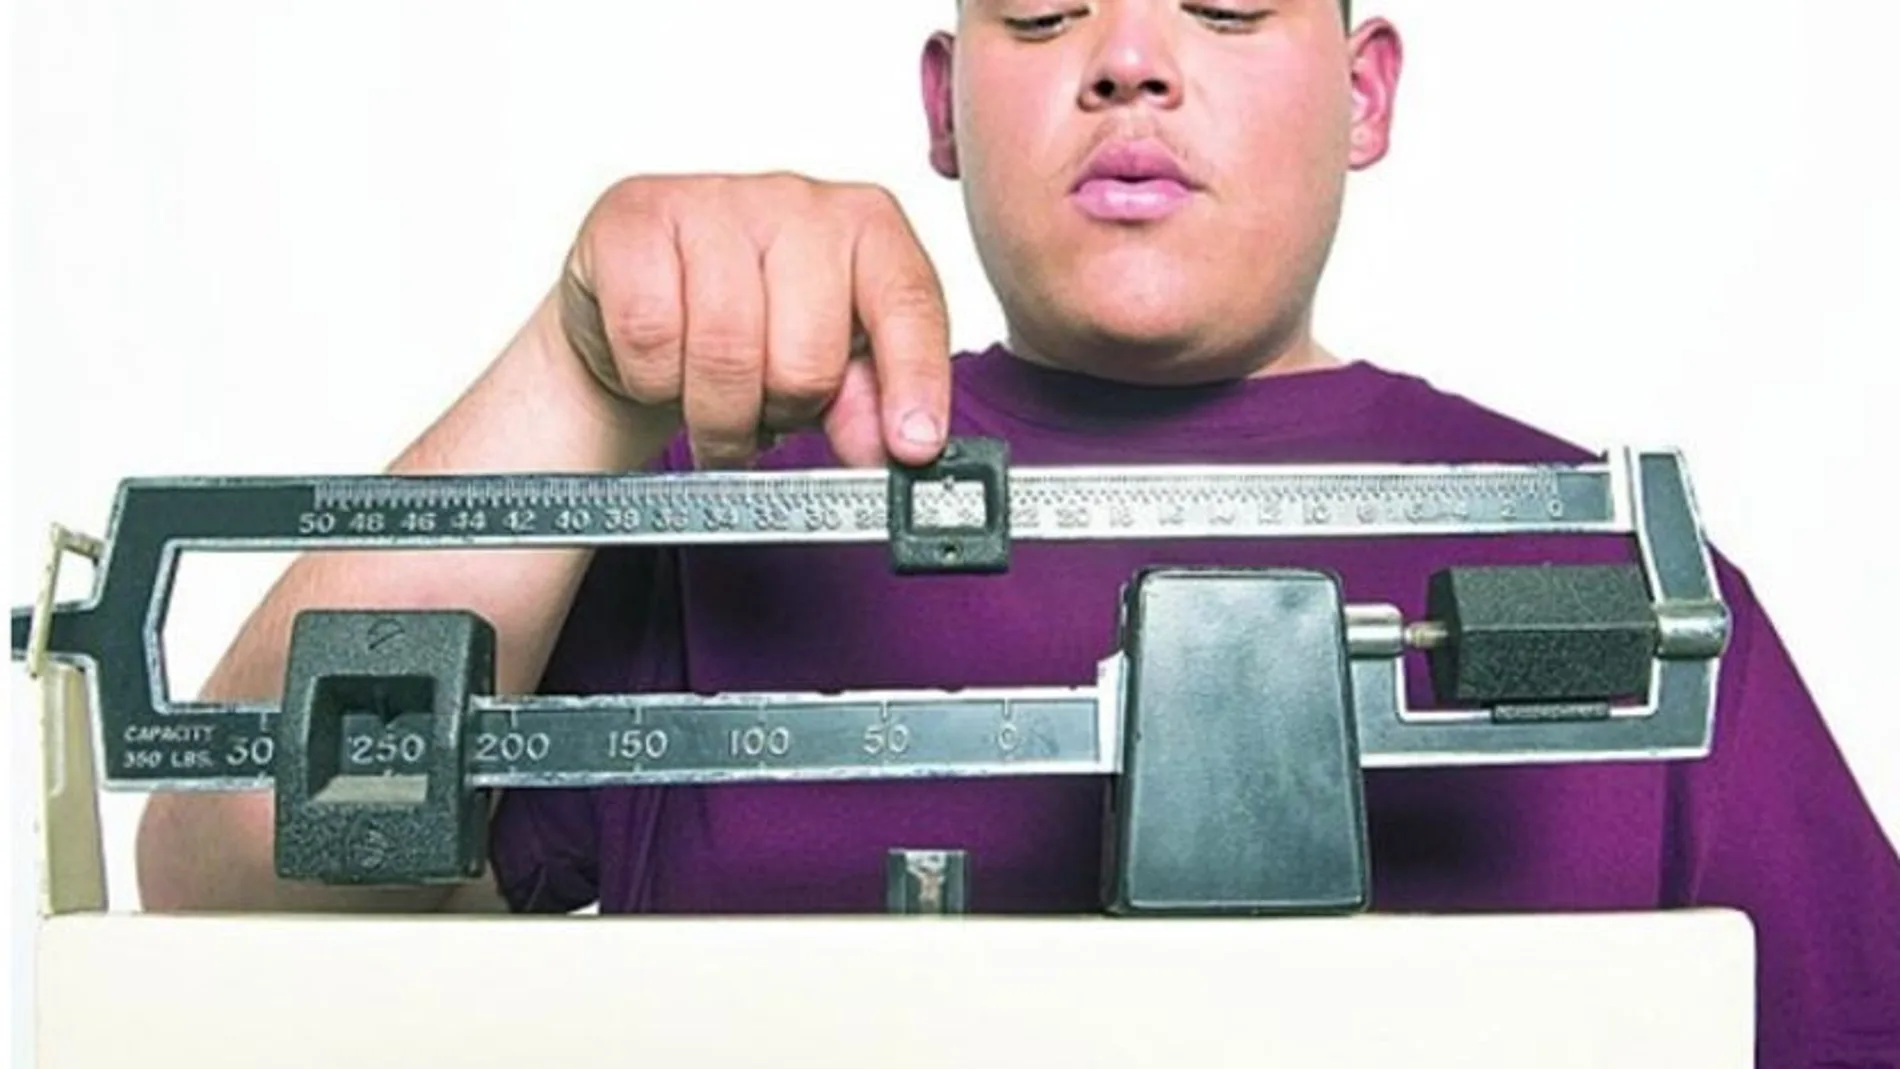 La cifra de adolescentes obesos se ha duplicado desde los 80 y con ella el número de enfermedades / Foto: Ingimages